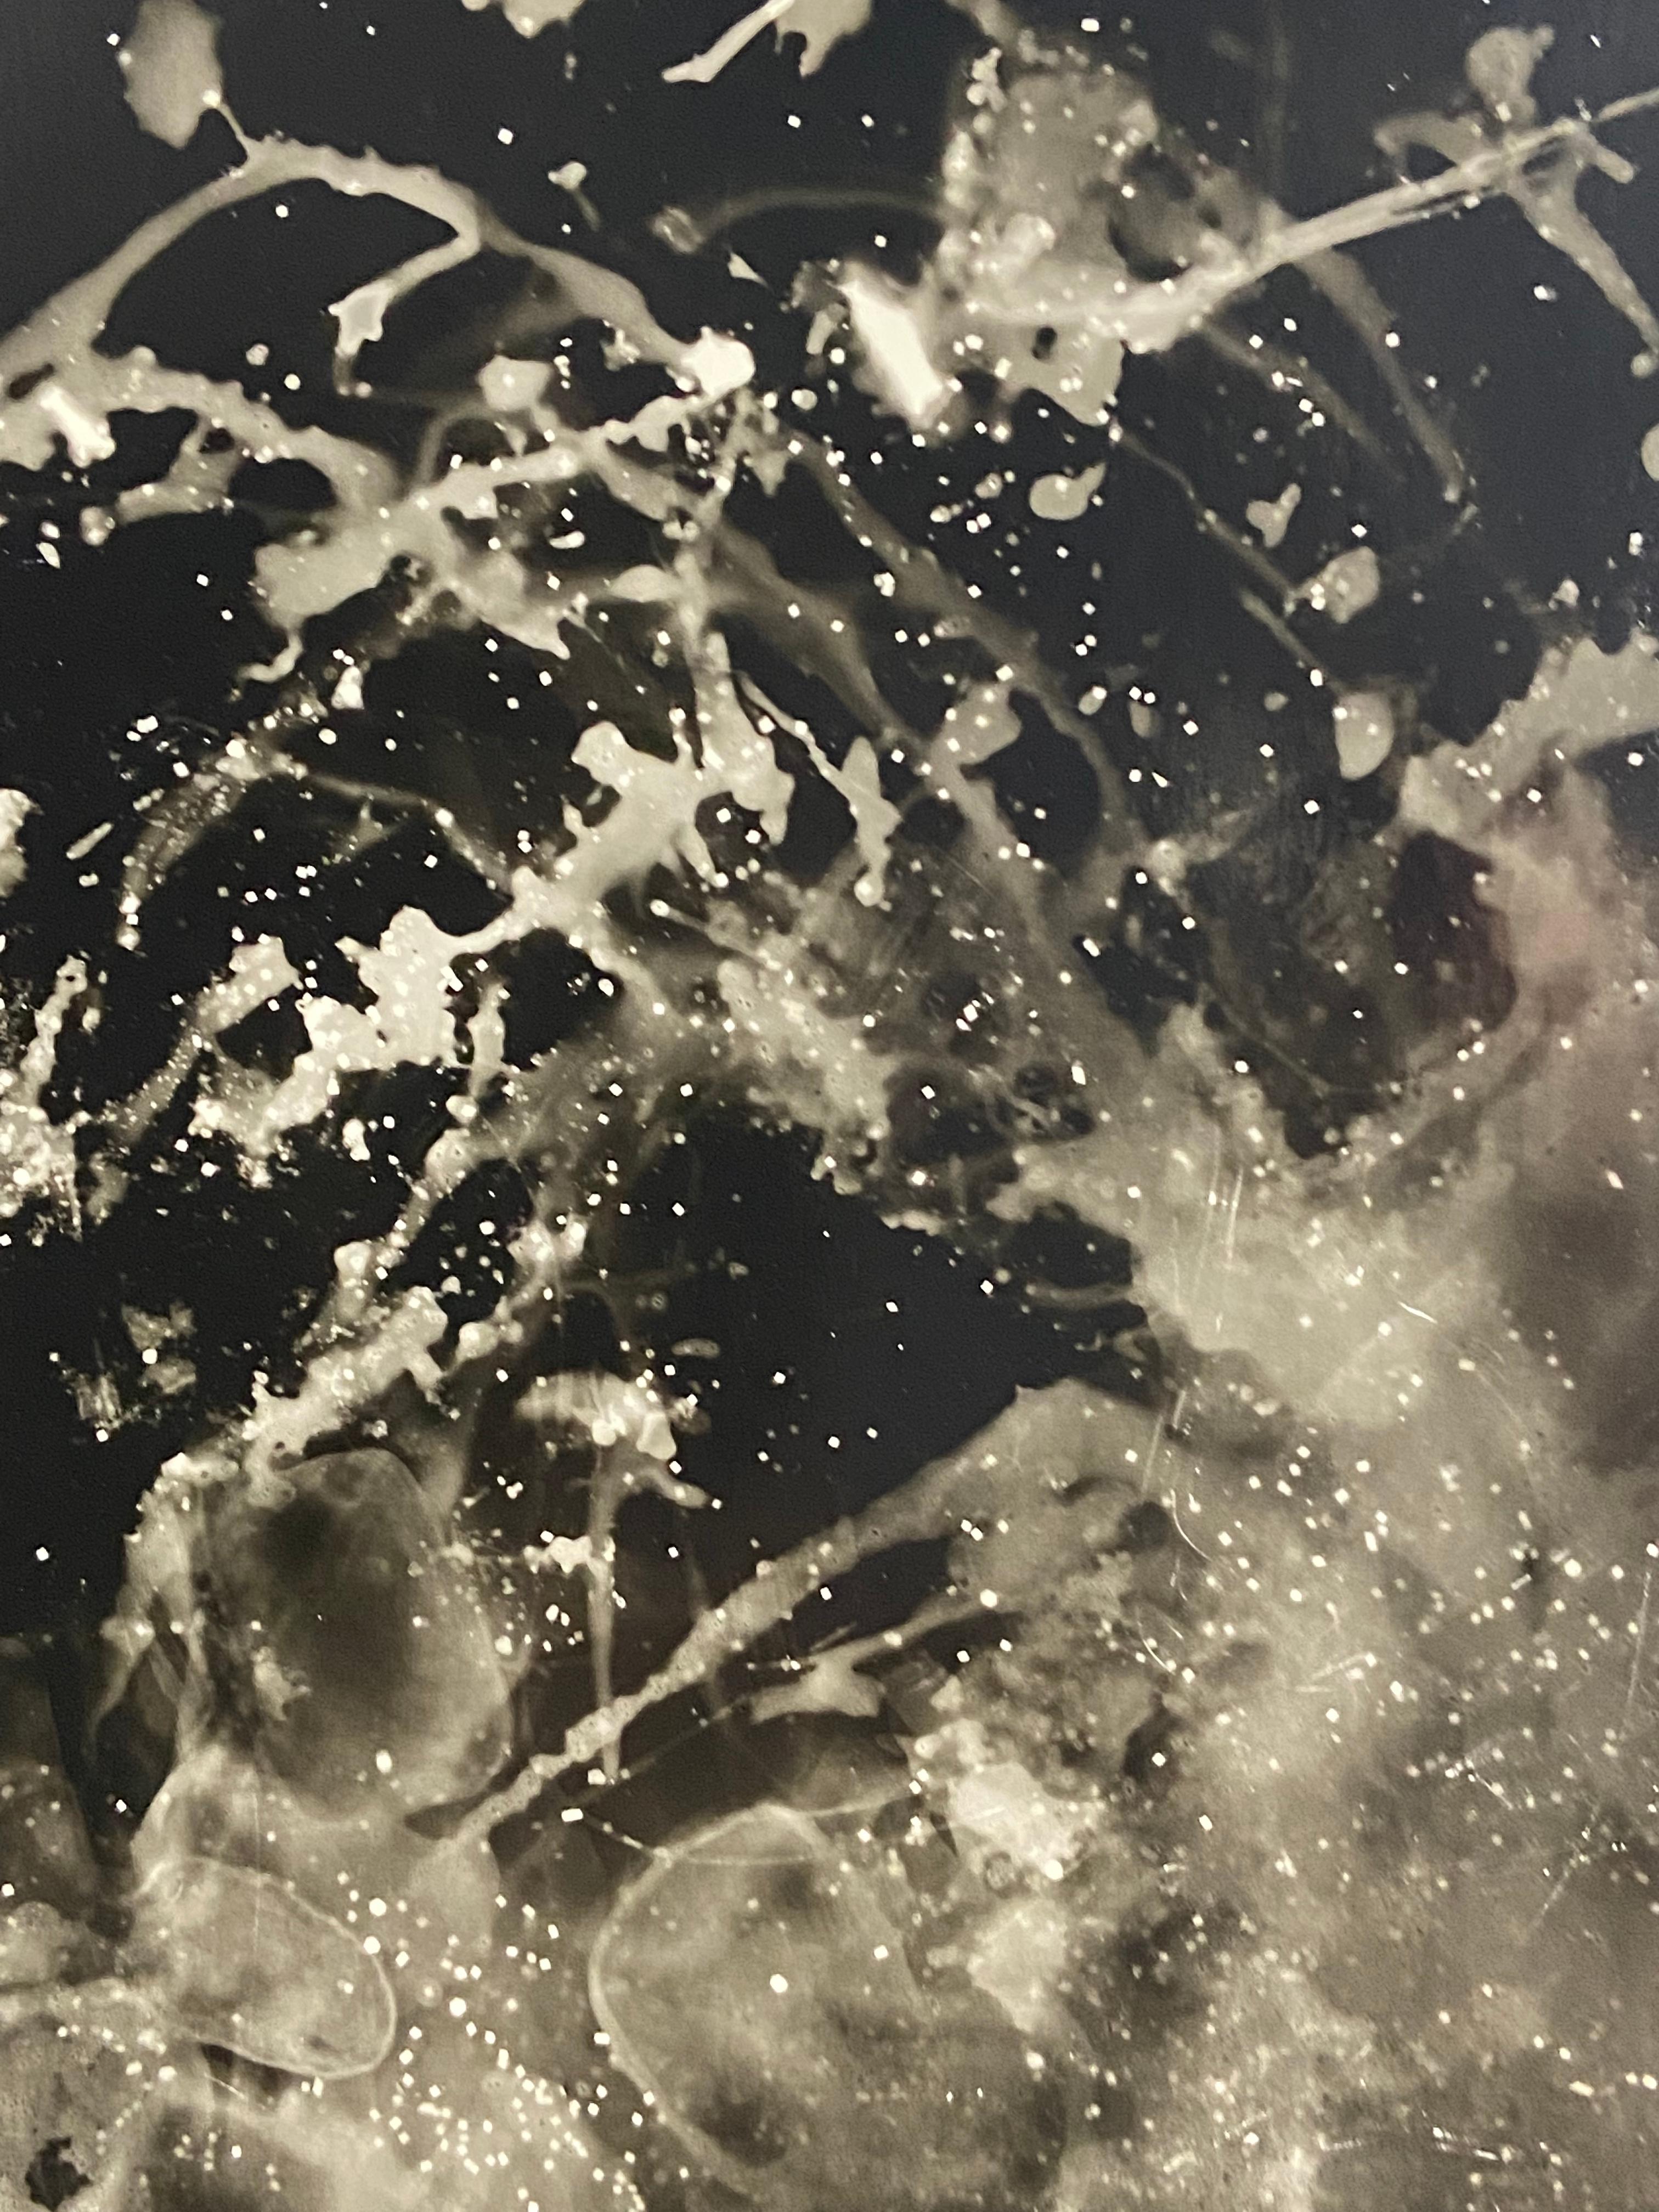 Starry Night - abstraktes, einzigartiges, zeitgenössisches Fotogramm aus Silbergelatinesatin im Altprozess (Abstrakt), Photograph, von Kimberly Schneider Photography